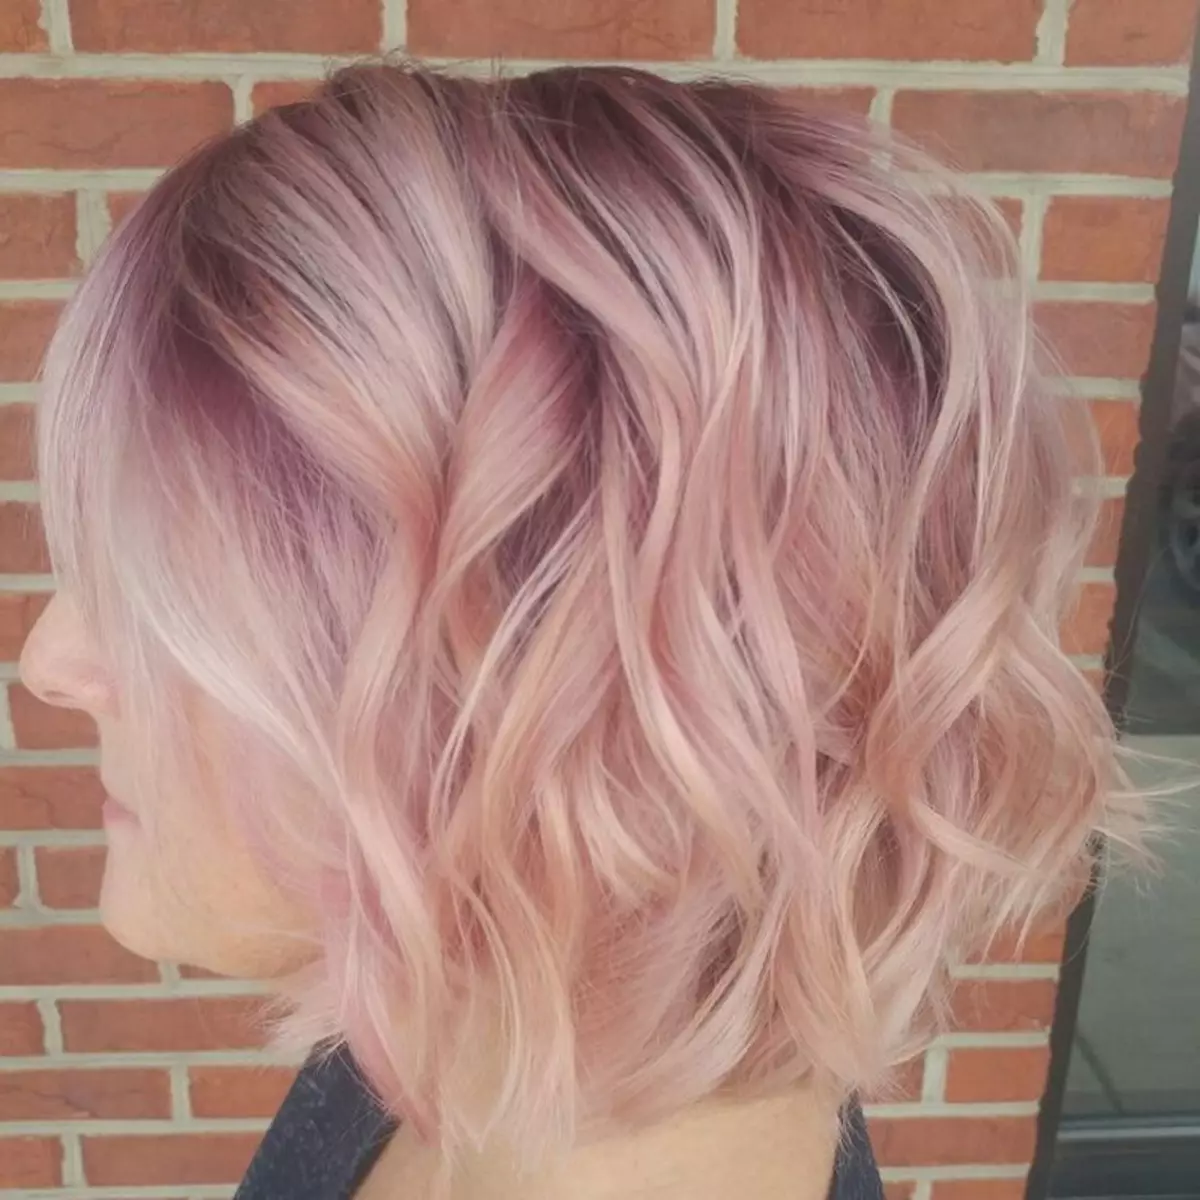 Окрашивание на средние волосы с розовым оттенком